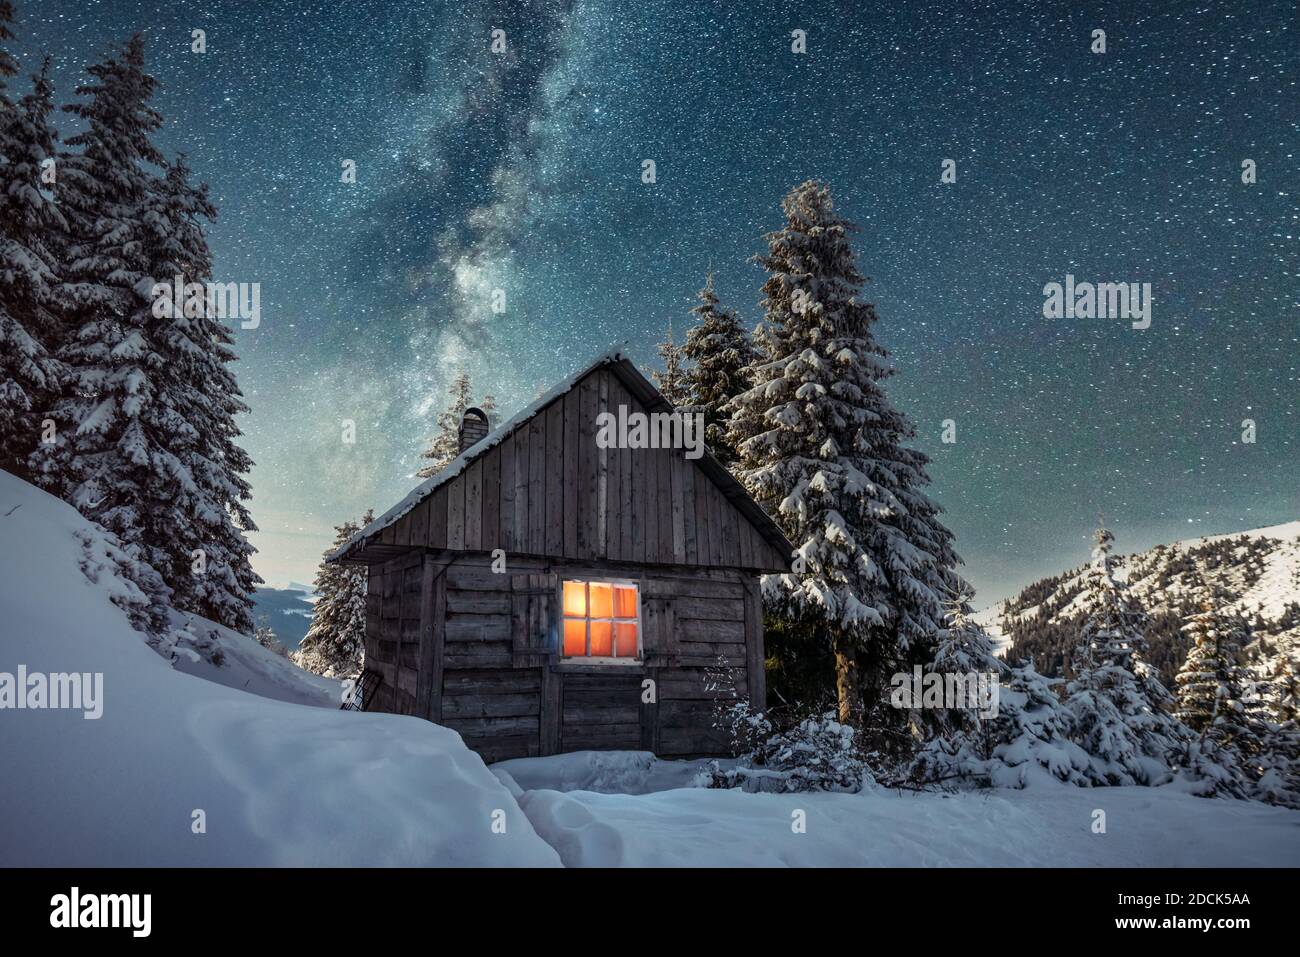 Fantastico paesaggio invernale con casa in legno in montagne innevate. Cielo stellato con Via Lattea e capanna innevata. Vacanza di Natale e concetto di vacanza invernale Foto Stock